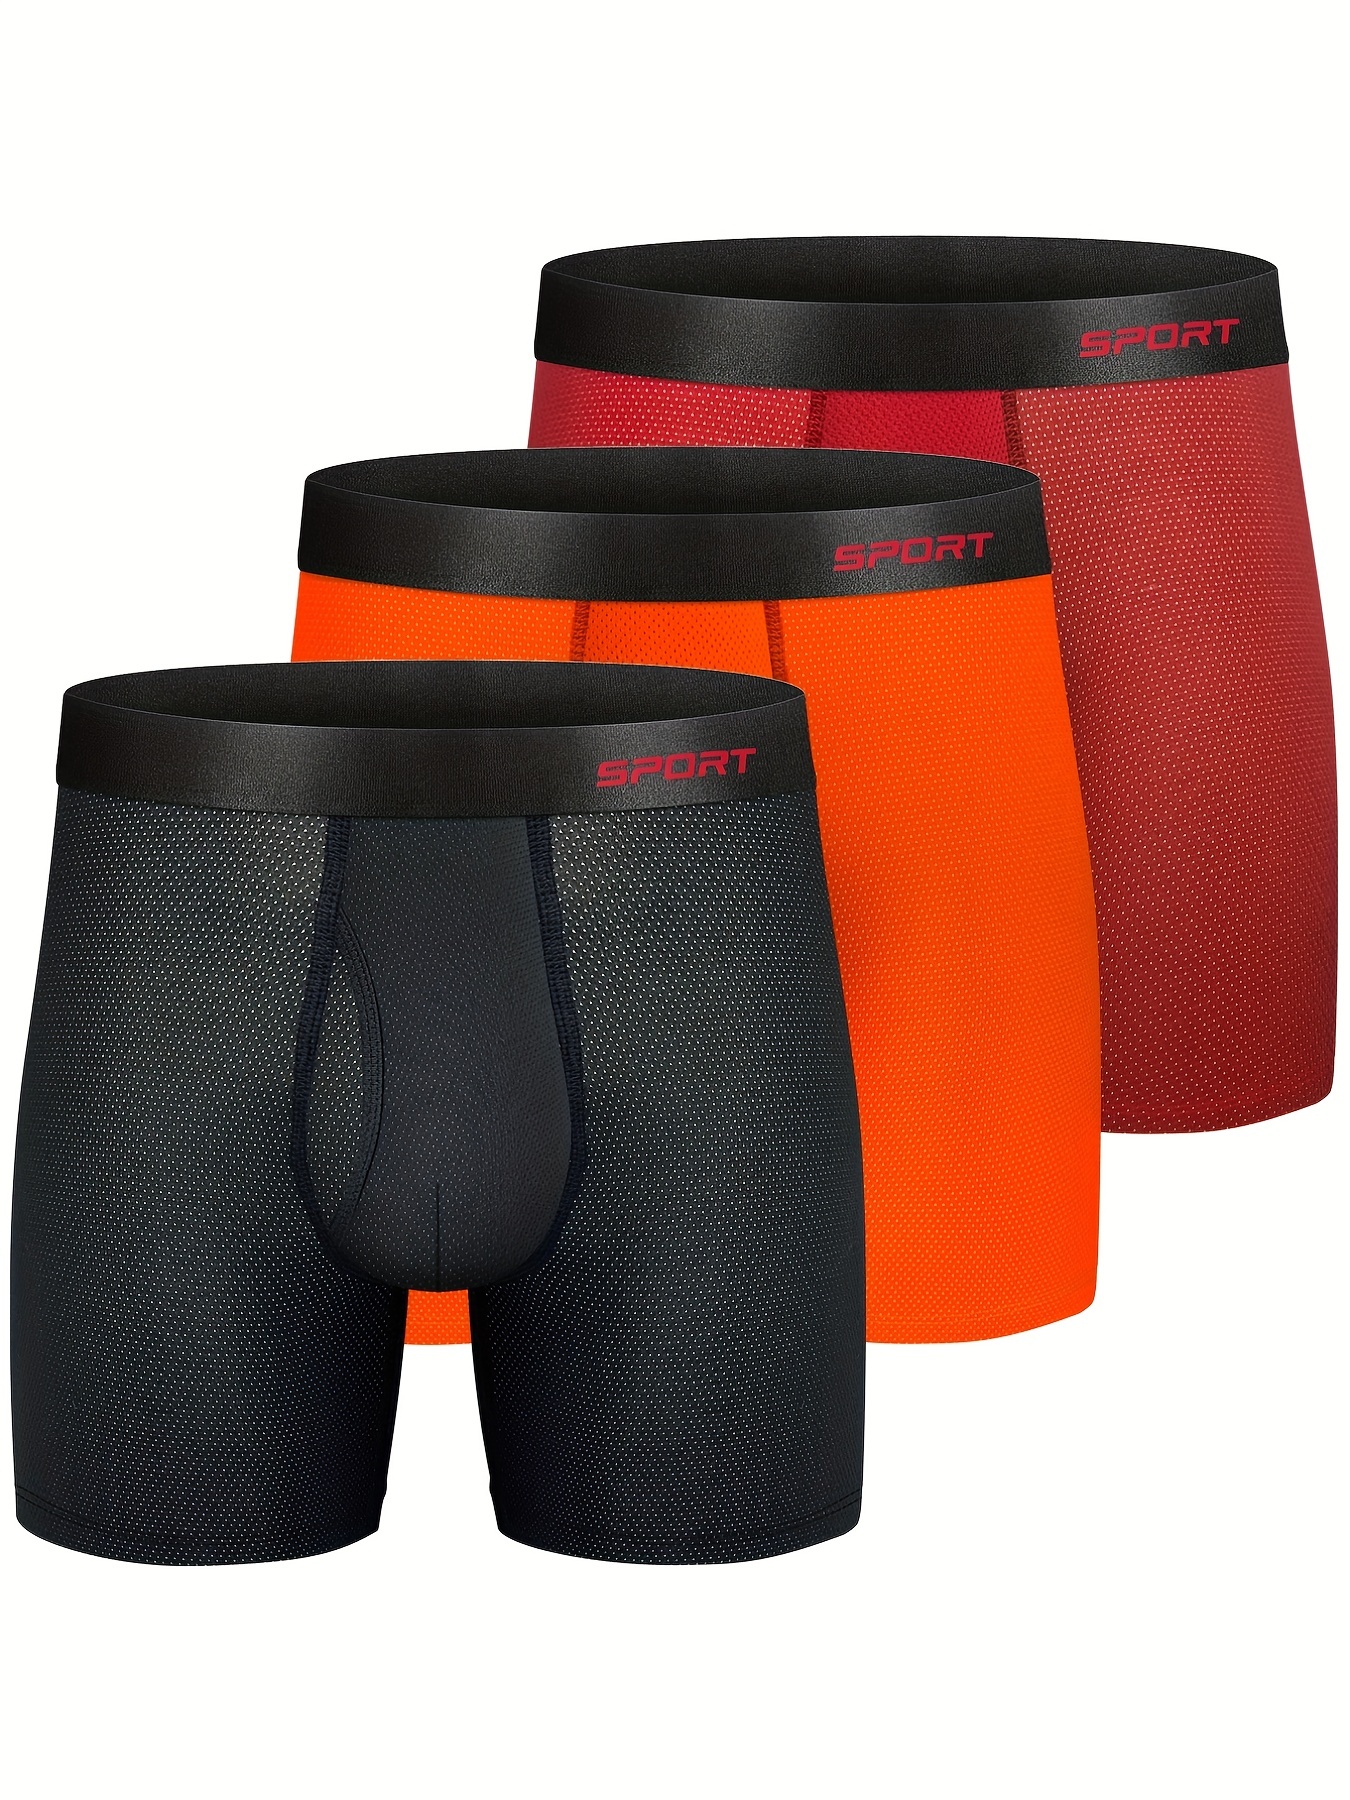 Spyder, Underwear & Socks, Spyder Performance Mesh Mens Boxer Briefs  Sports Underwear 3 Pack For Men